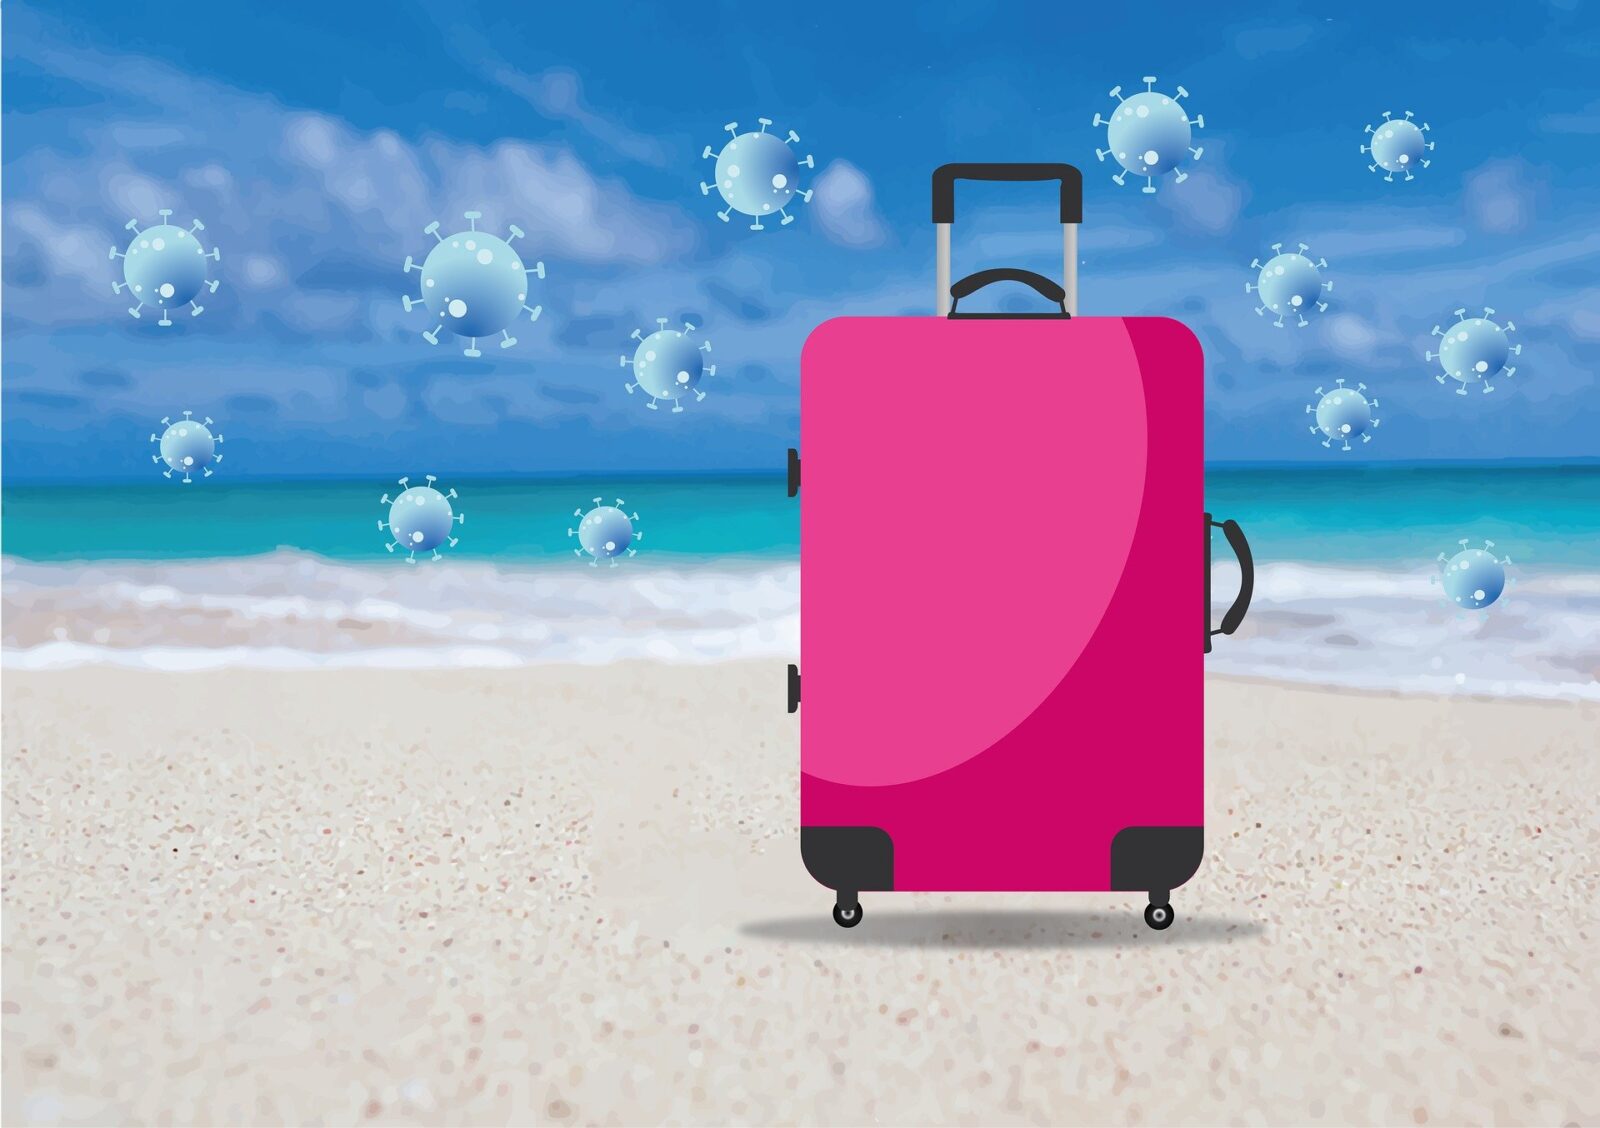 Ist Urlaub trotz Reisewarnung möglich und worauf muss geachtet werden?